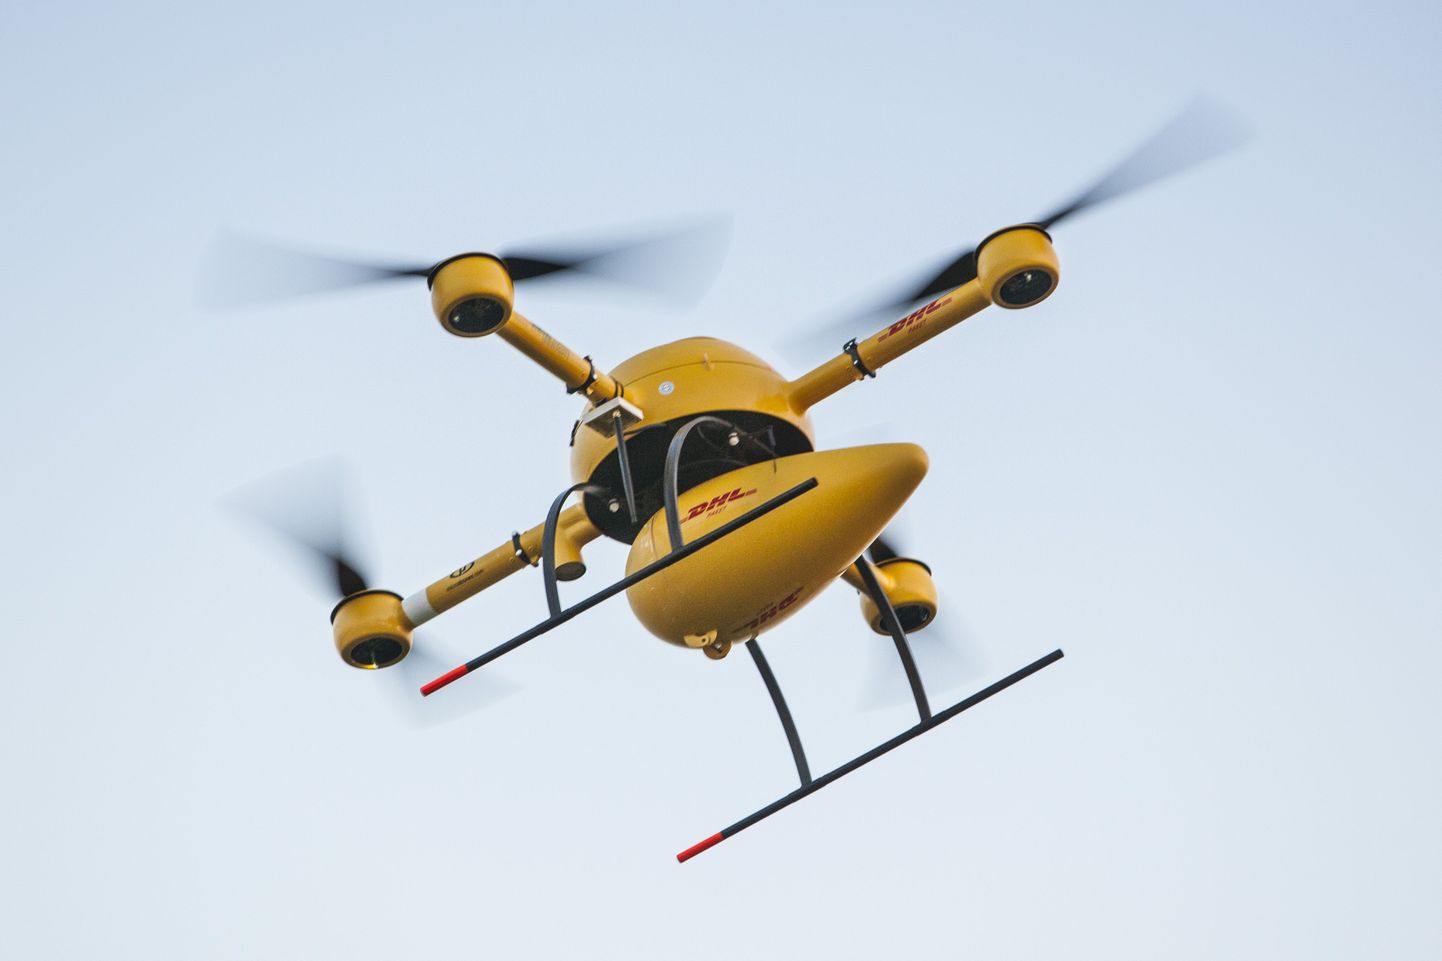 Saksa kullerifirma DHL presenteeris septembris oma drooni, mis hakkab pakke kohale toimetama.